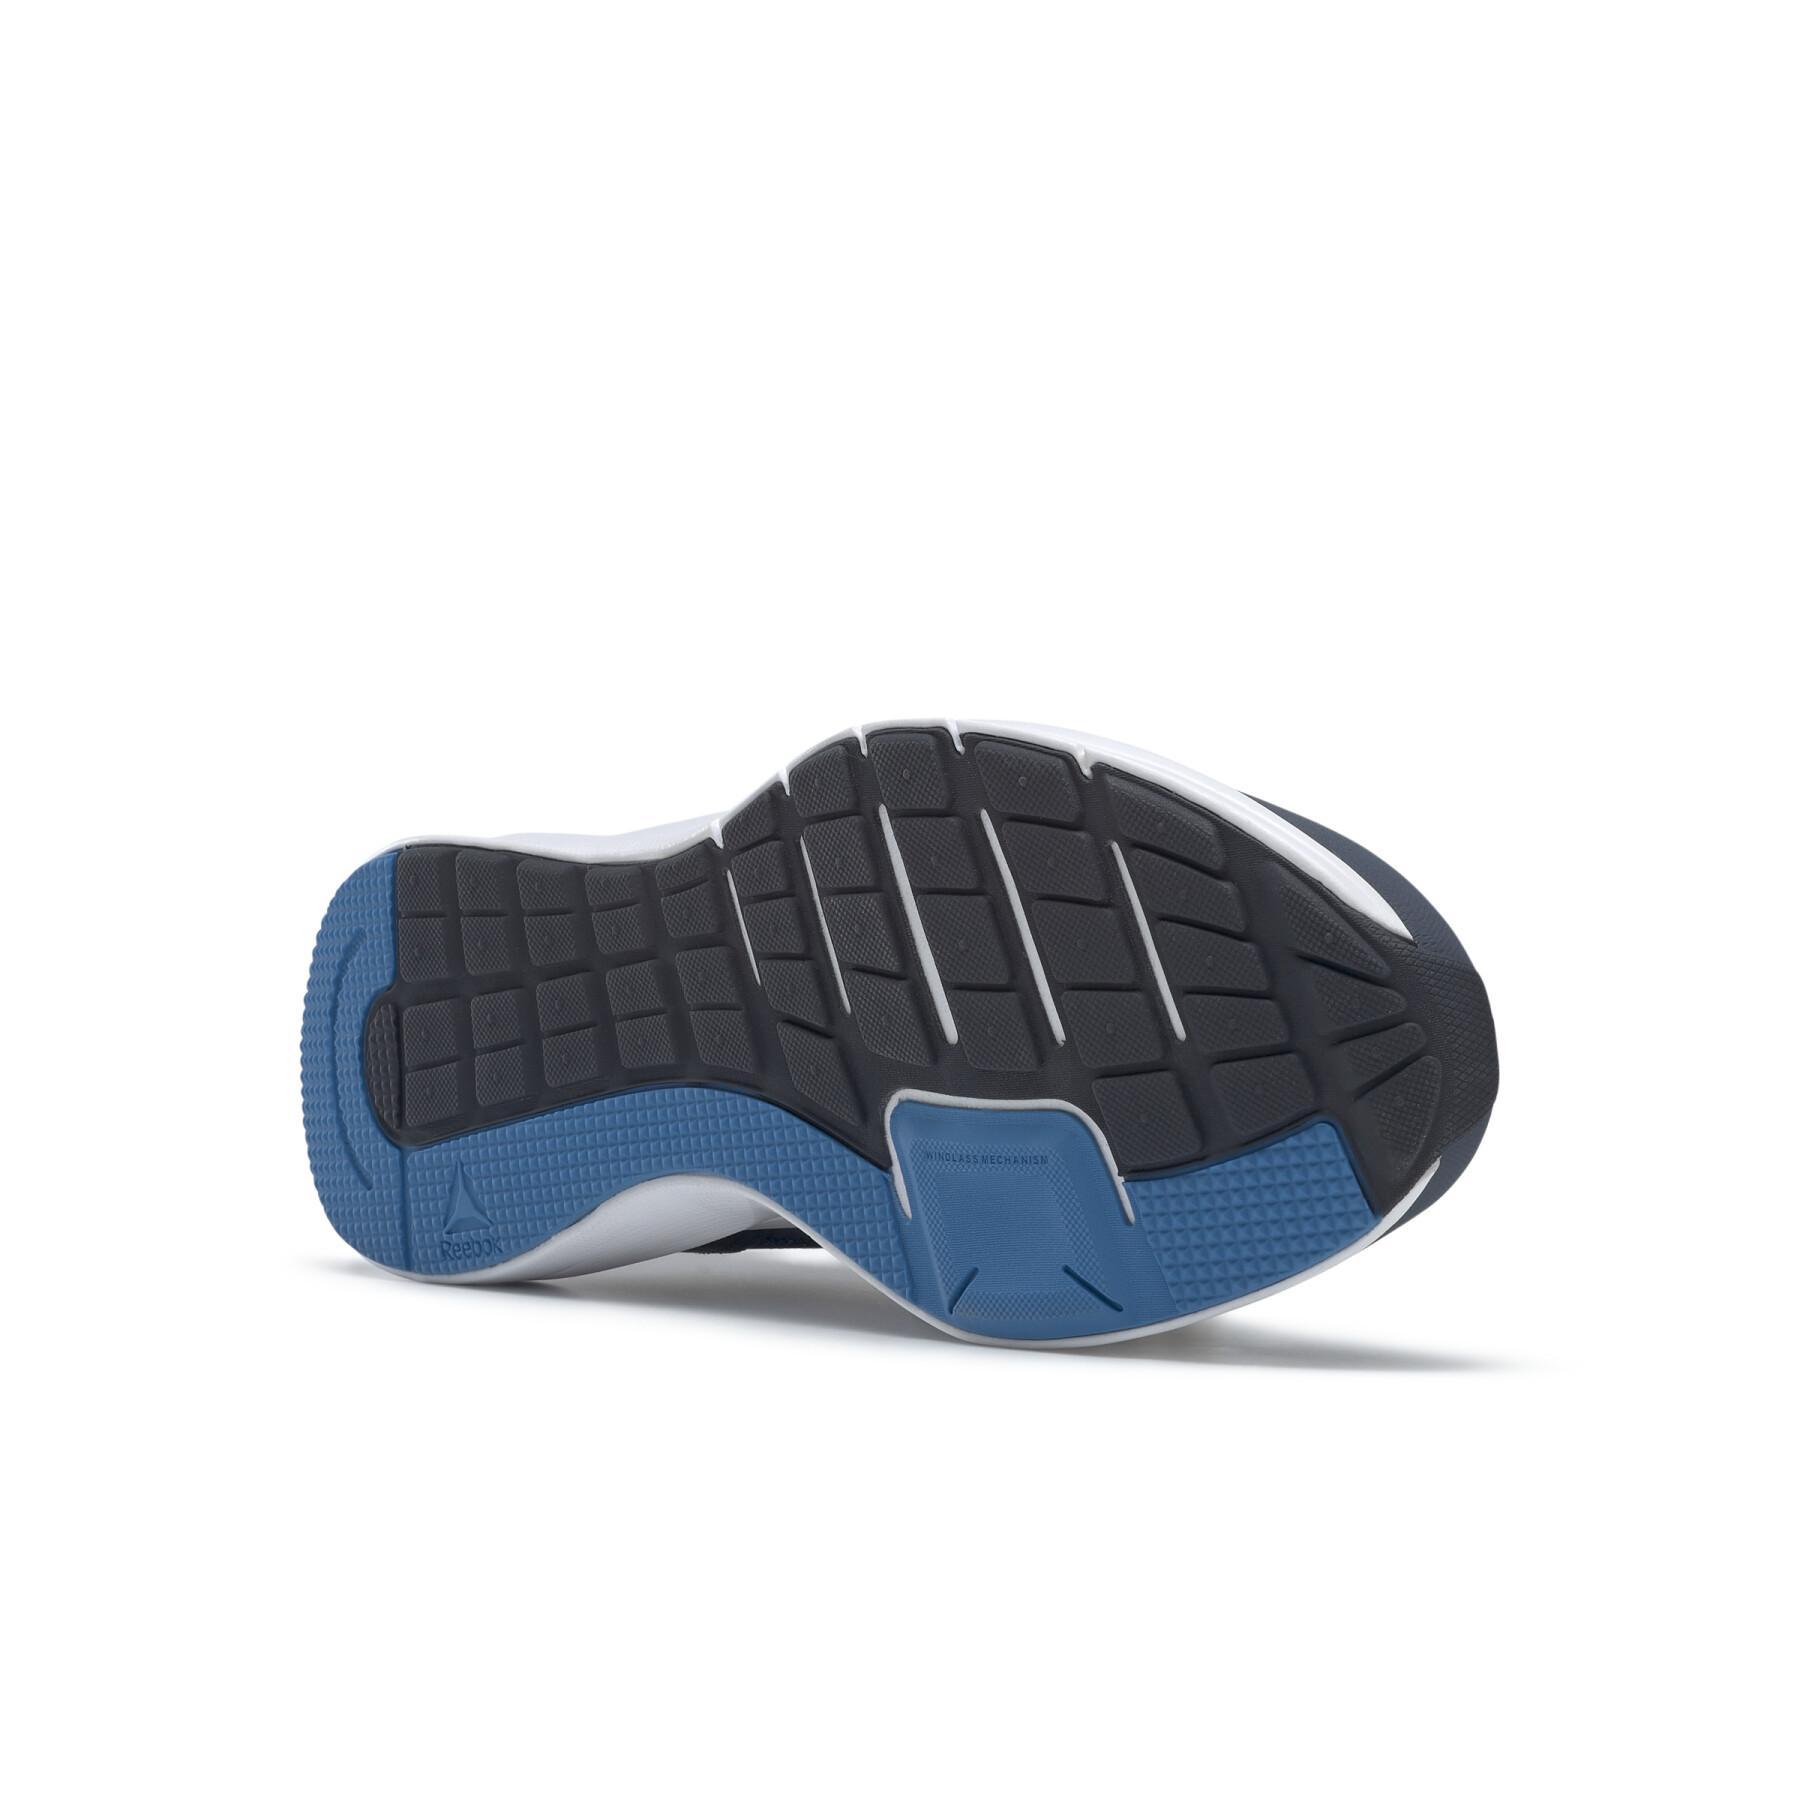 Chaussures Reebok Runner 4.0